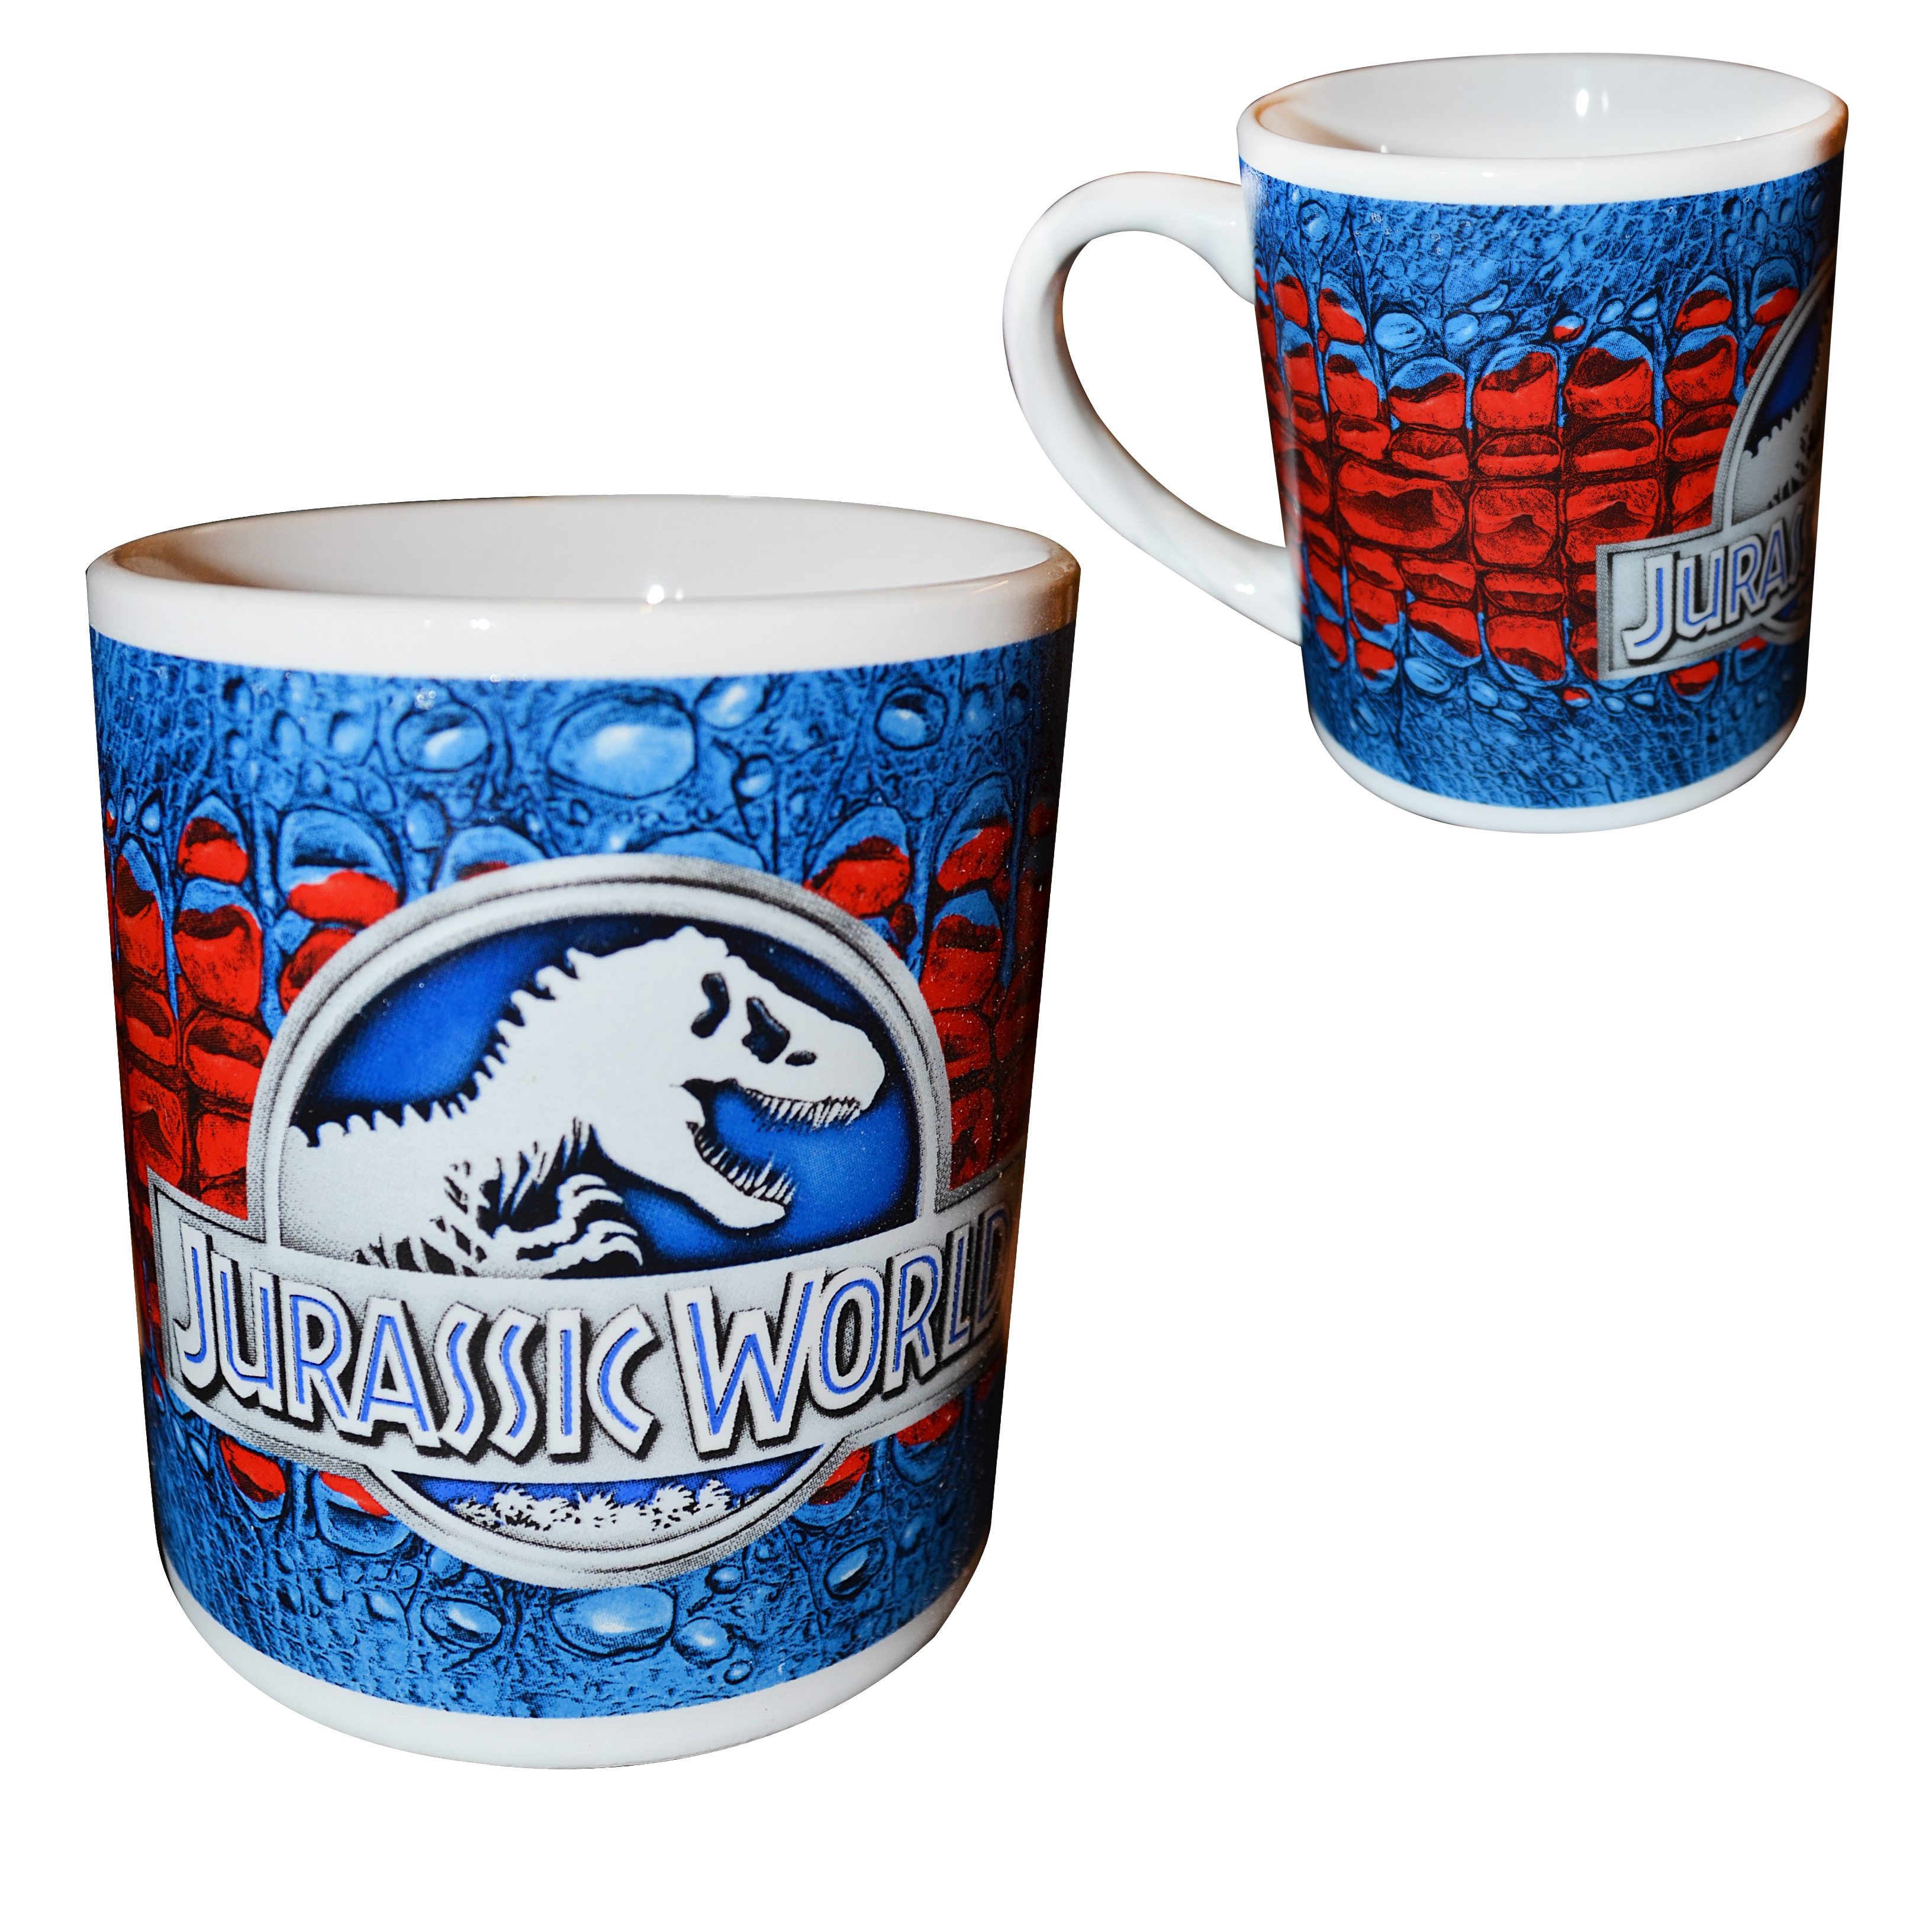 Jurassic World 'Logo' Mug